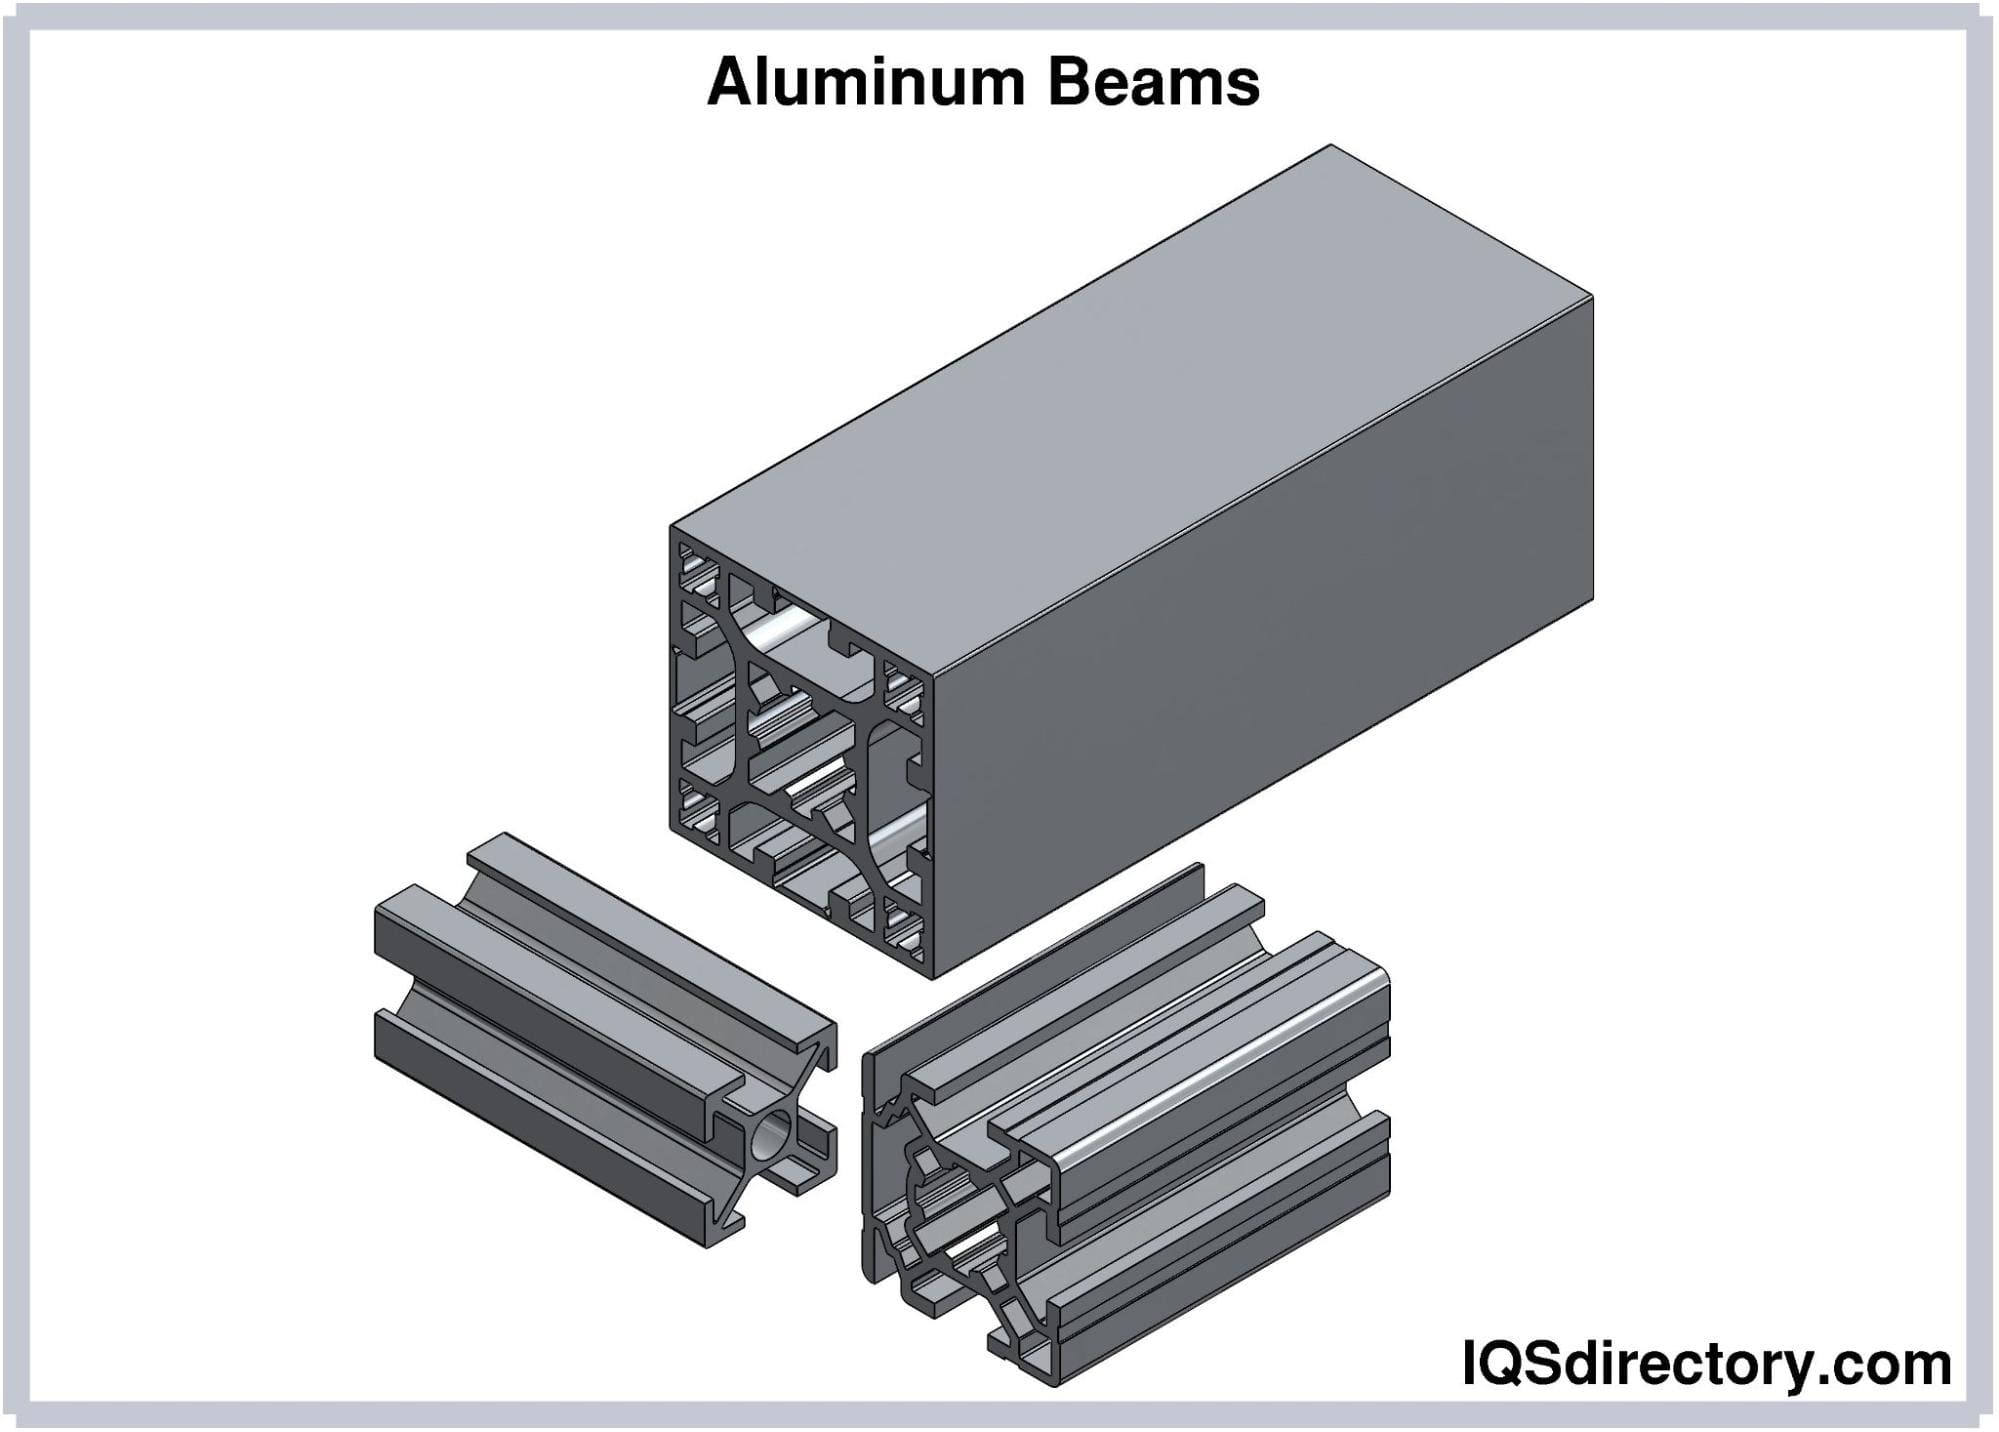 Aluminum Beams